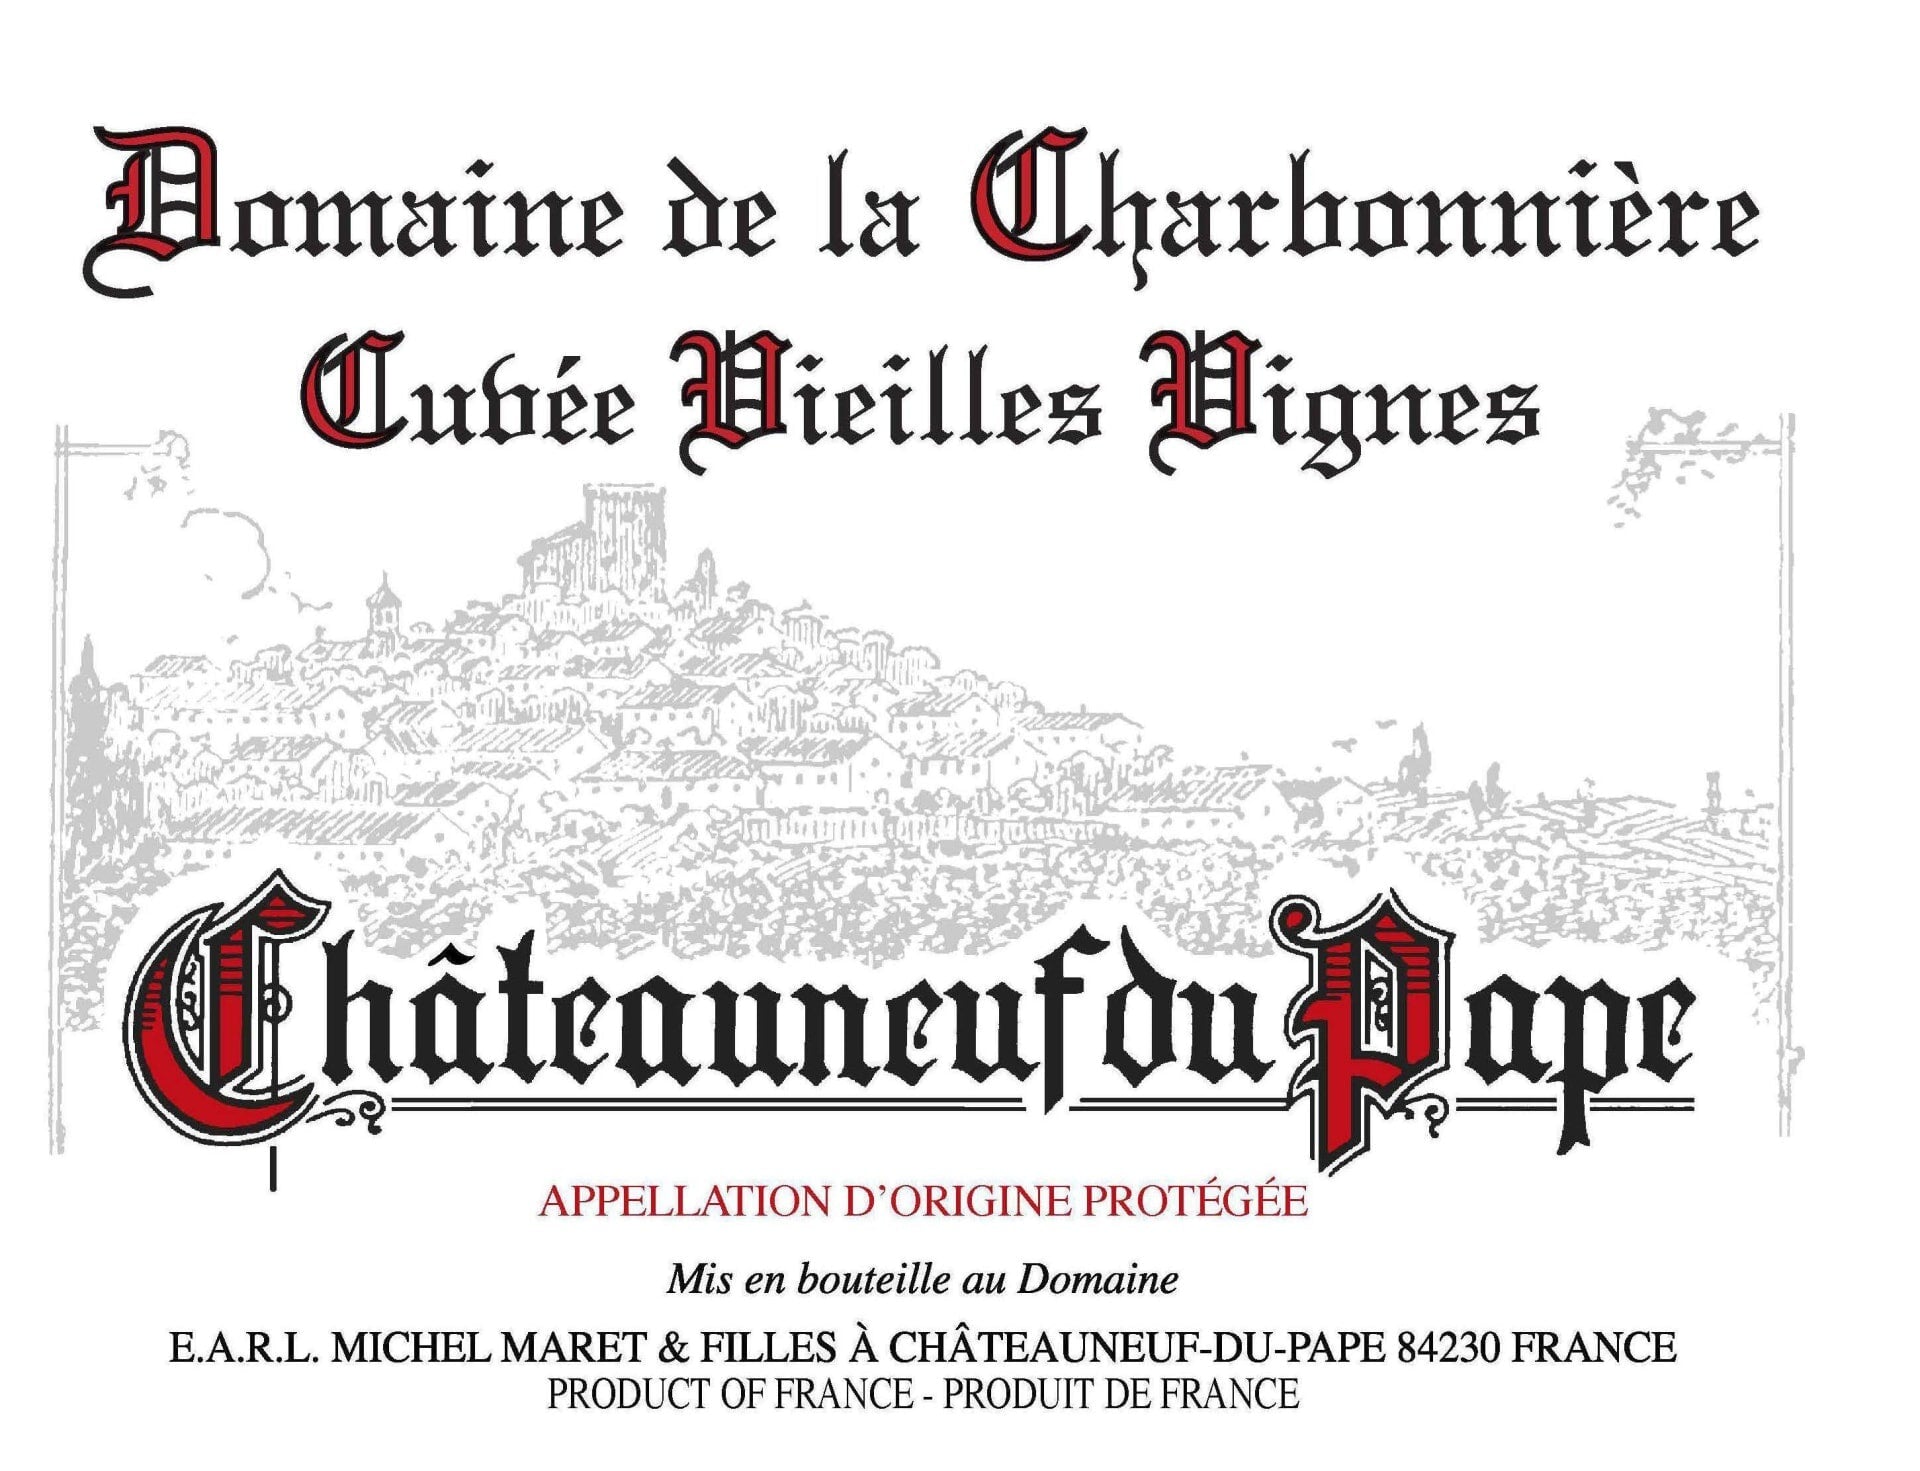 Domaine de la Charbonniere Chateauneuf du Pape Vieilles Vignes 2019 - 750ml